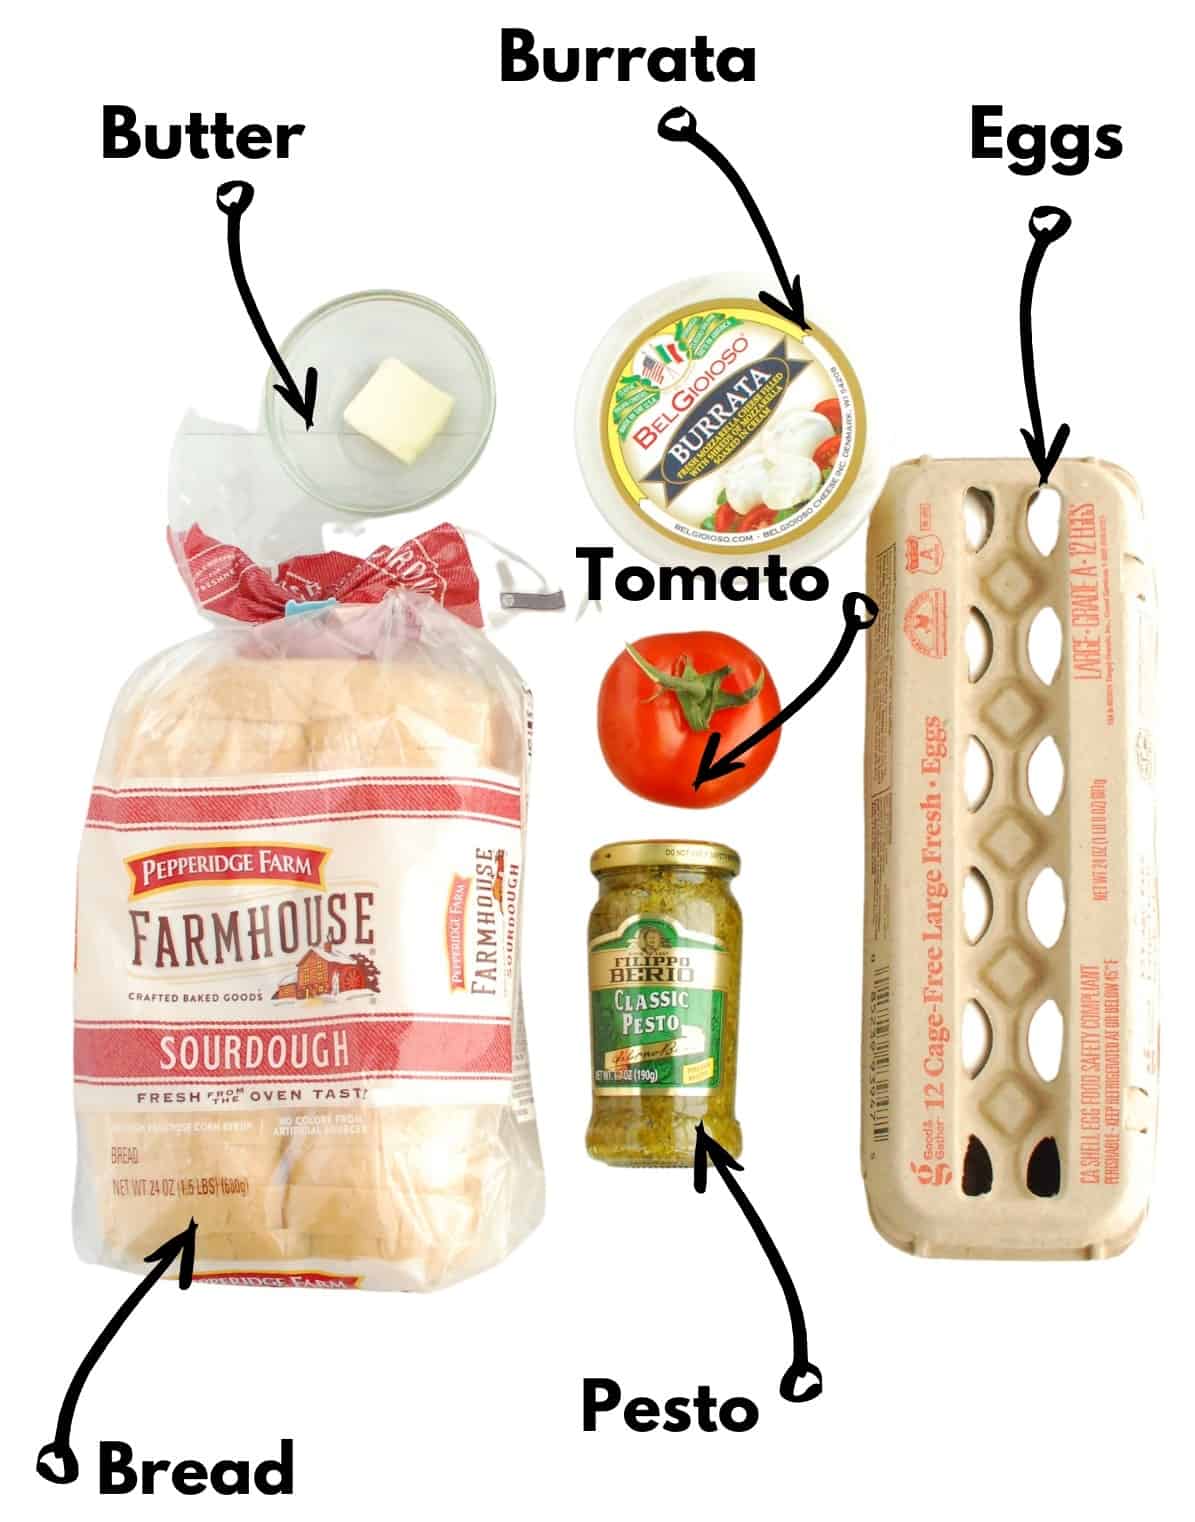 Bread, eggs, butter, pesto, tomato, and burrata on a white backdrop.